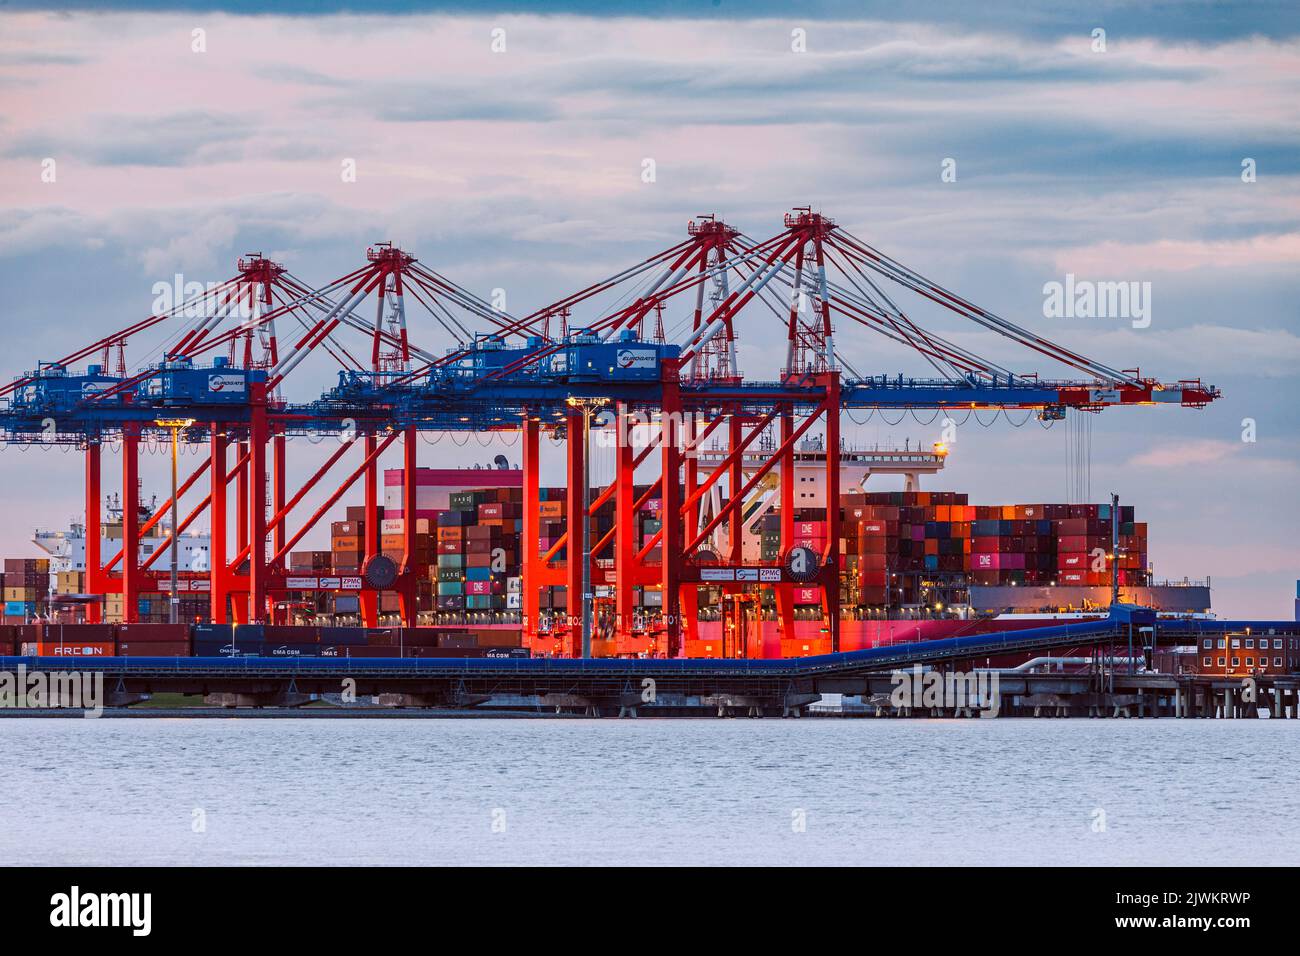 Jade-Weser-Port, Containerterminal in Wilhelmshafen, Umschlag der Ladung eines großen Containerschiffs Stock Photo